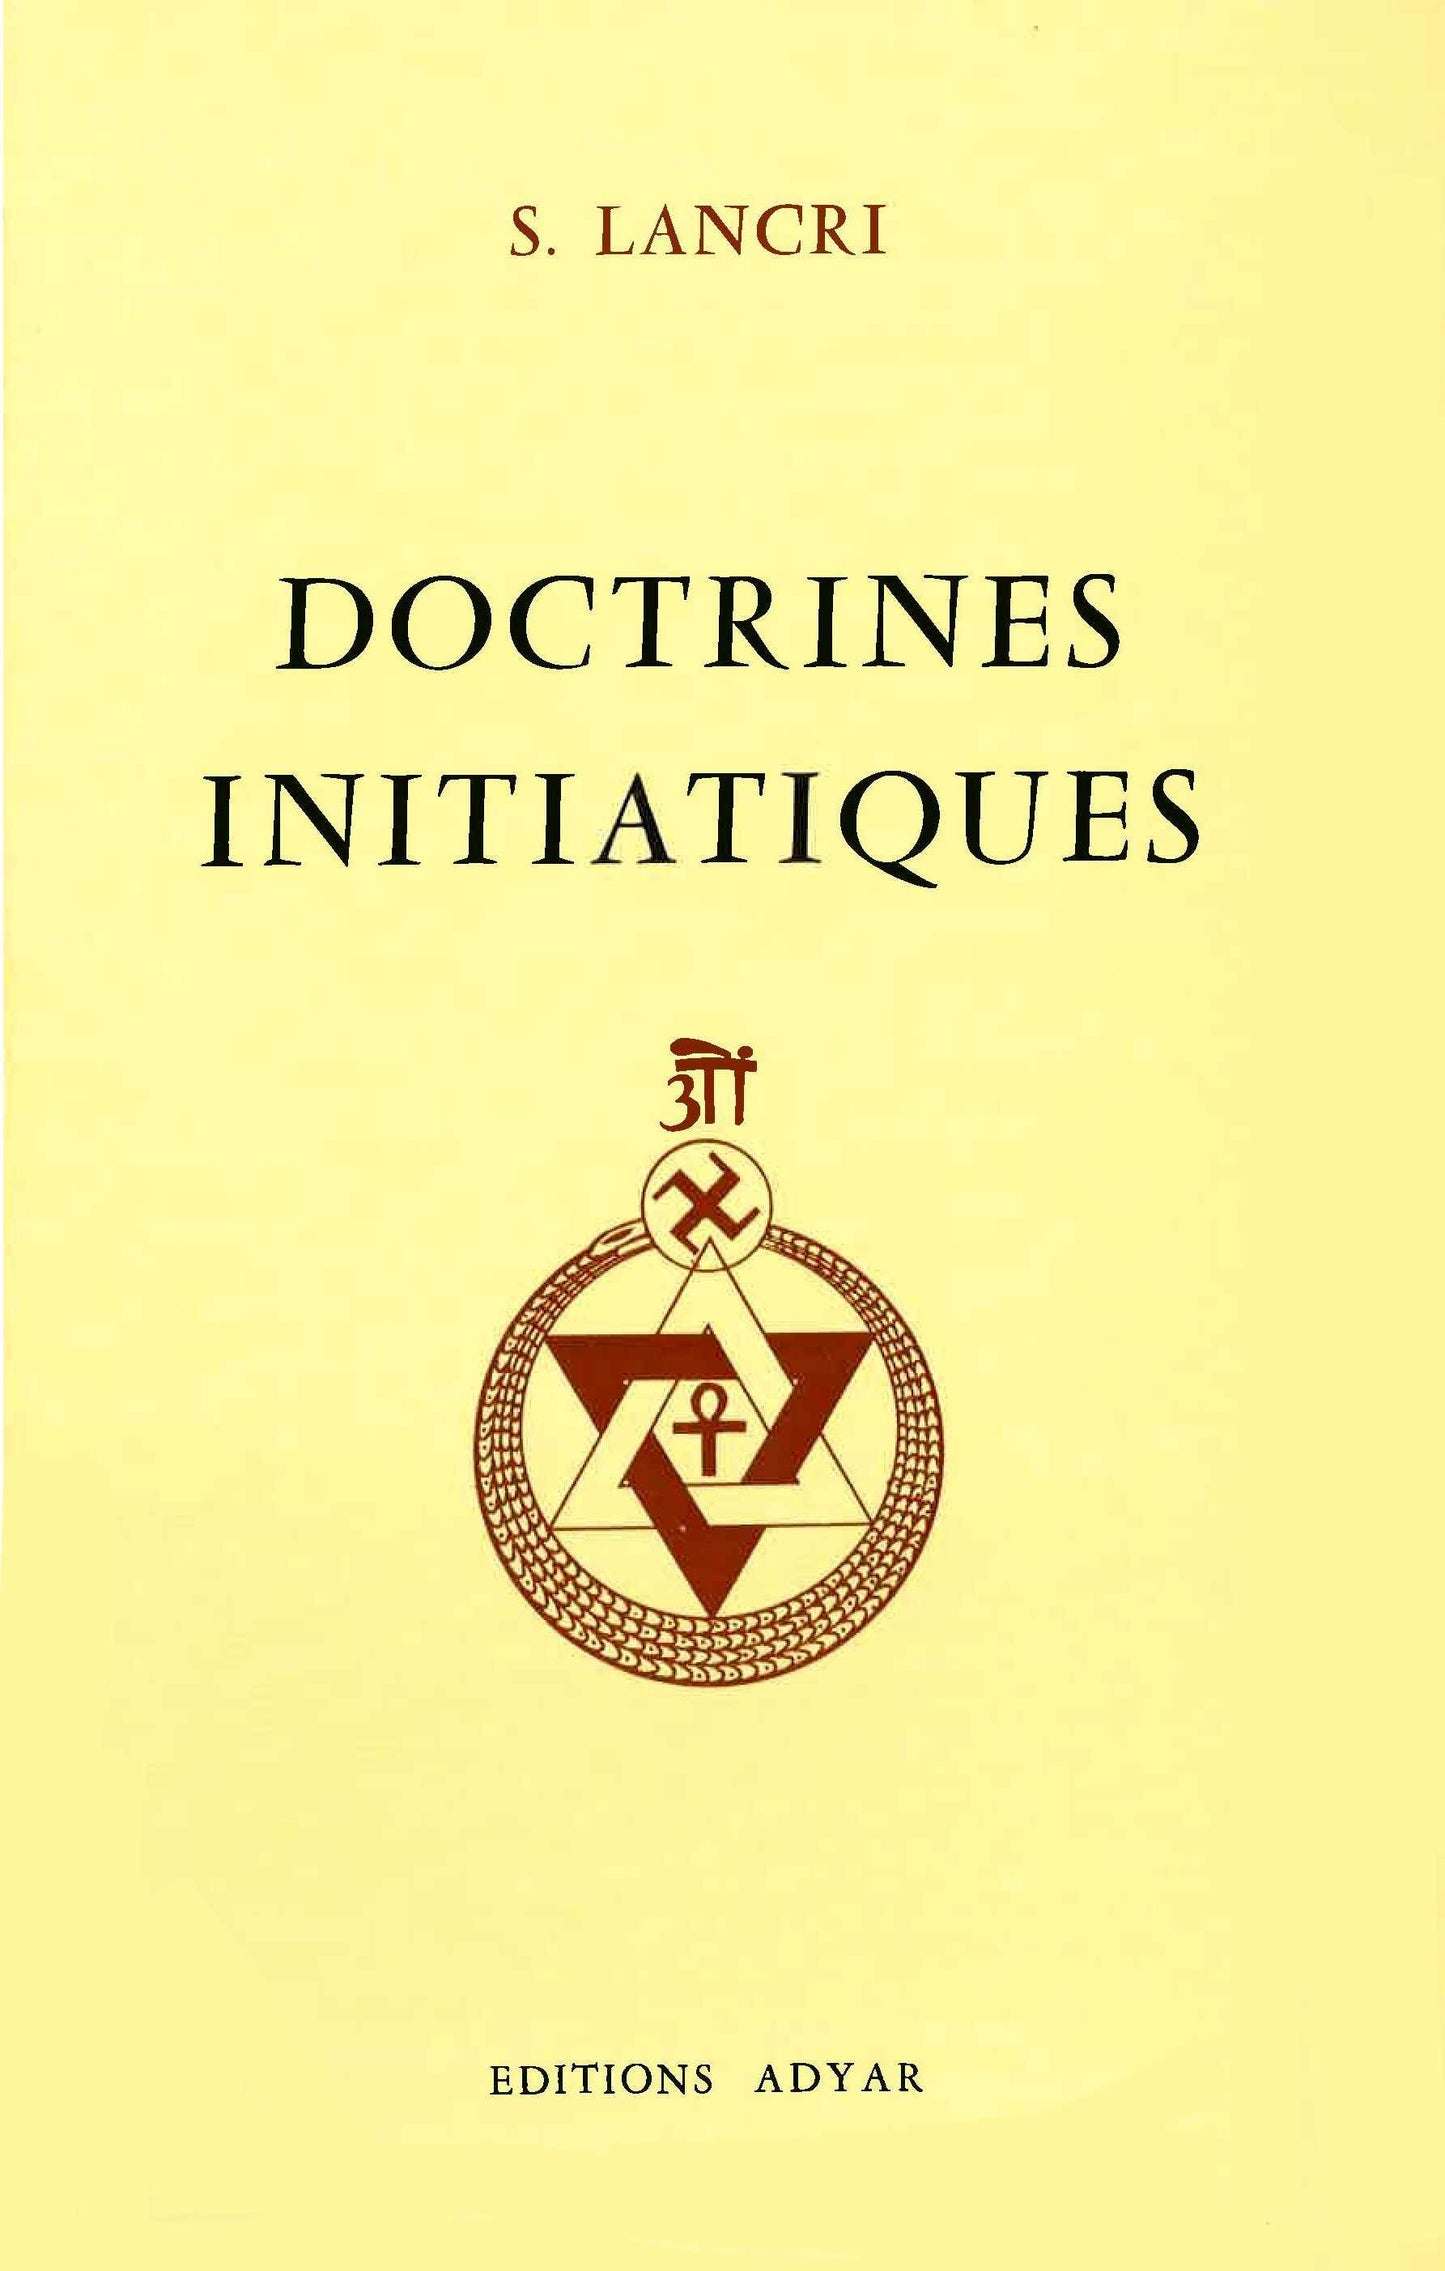 Doctrines initiatiques